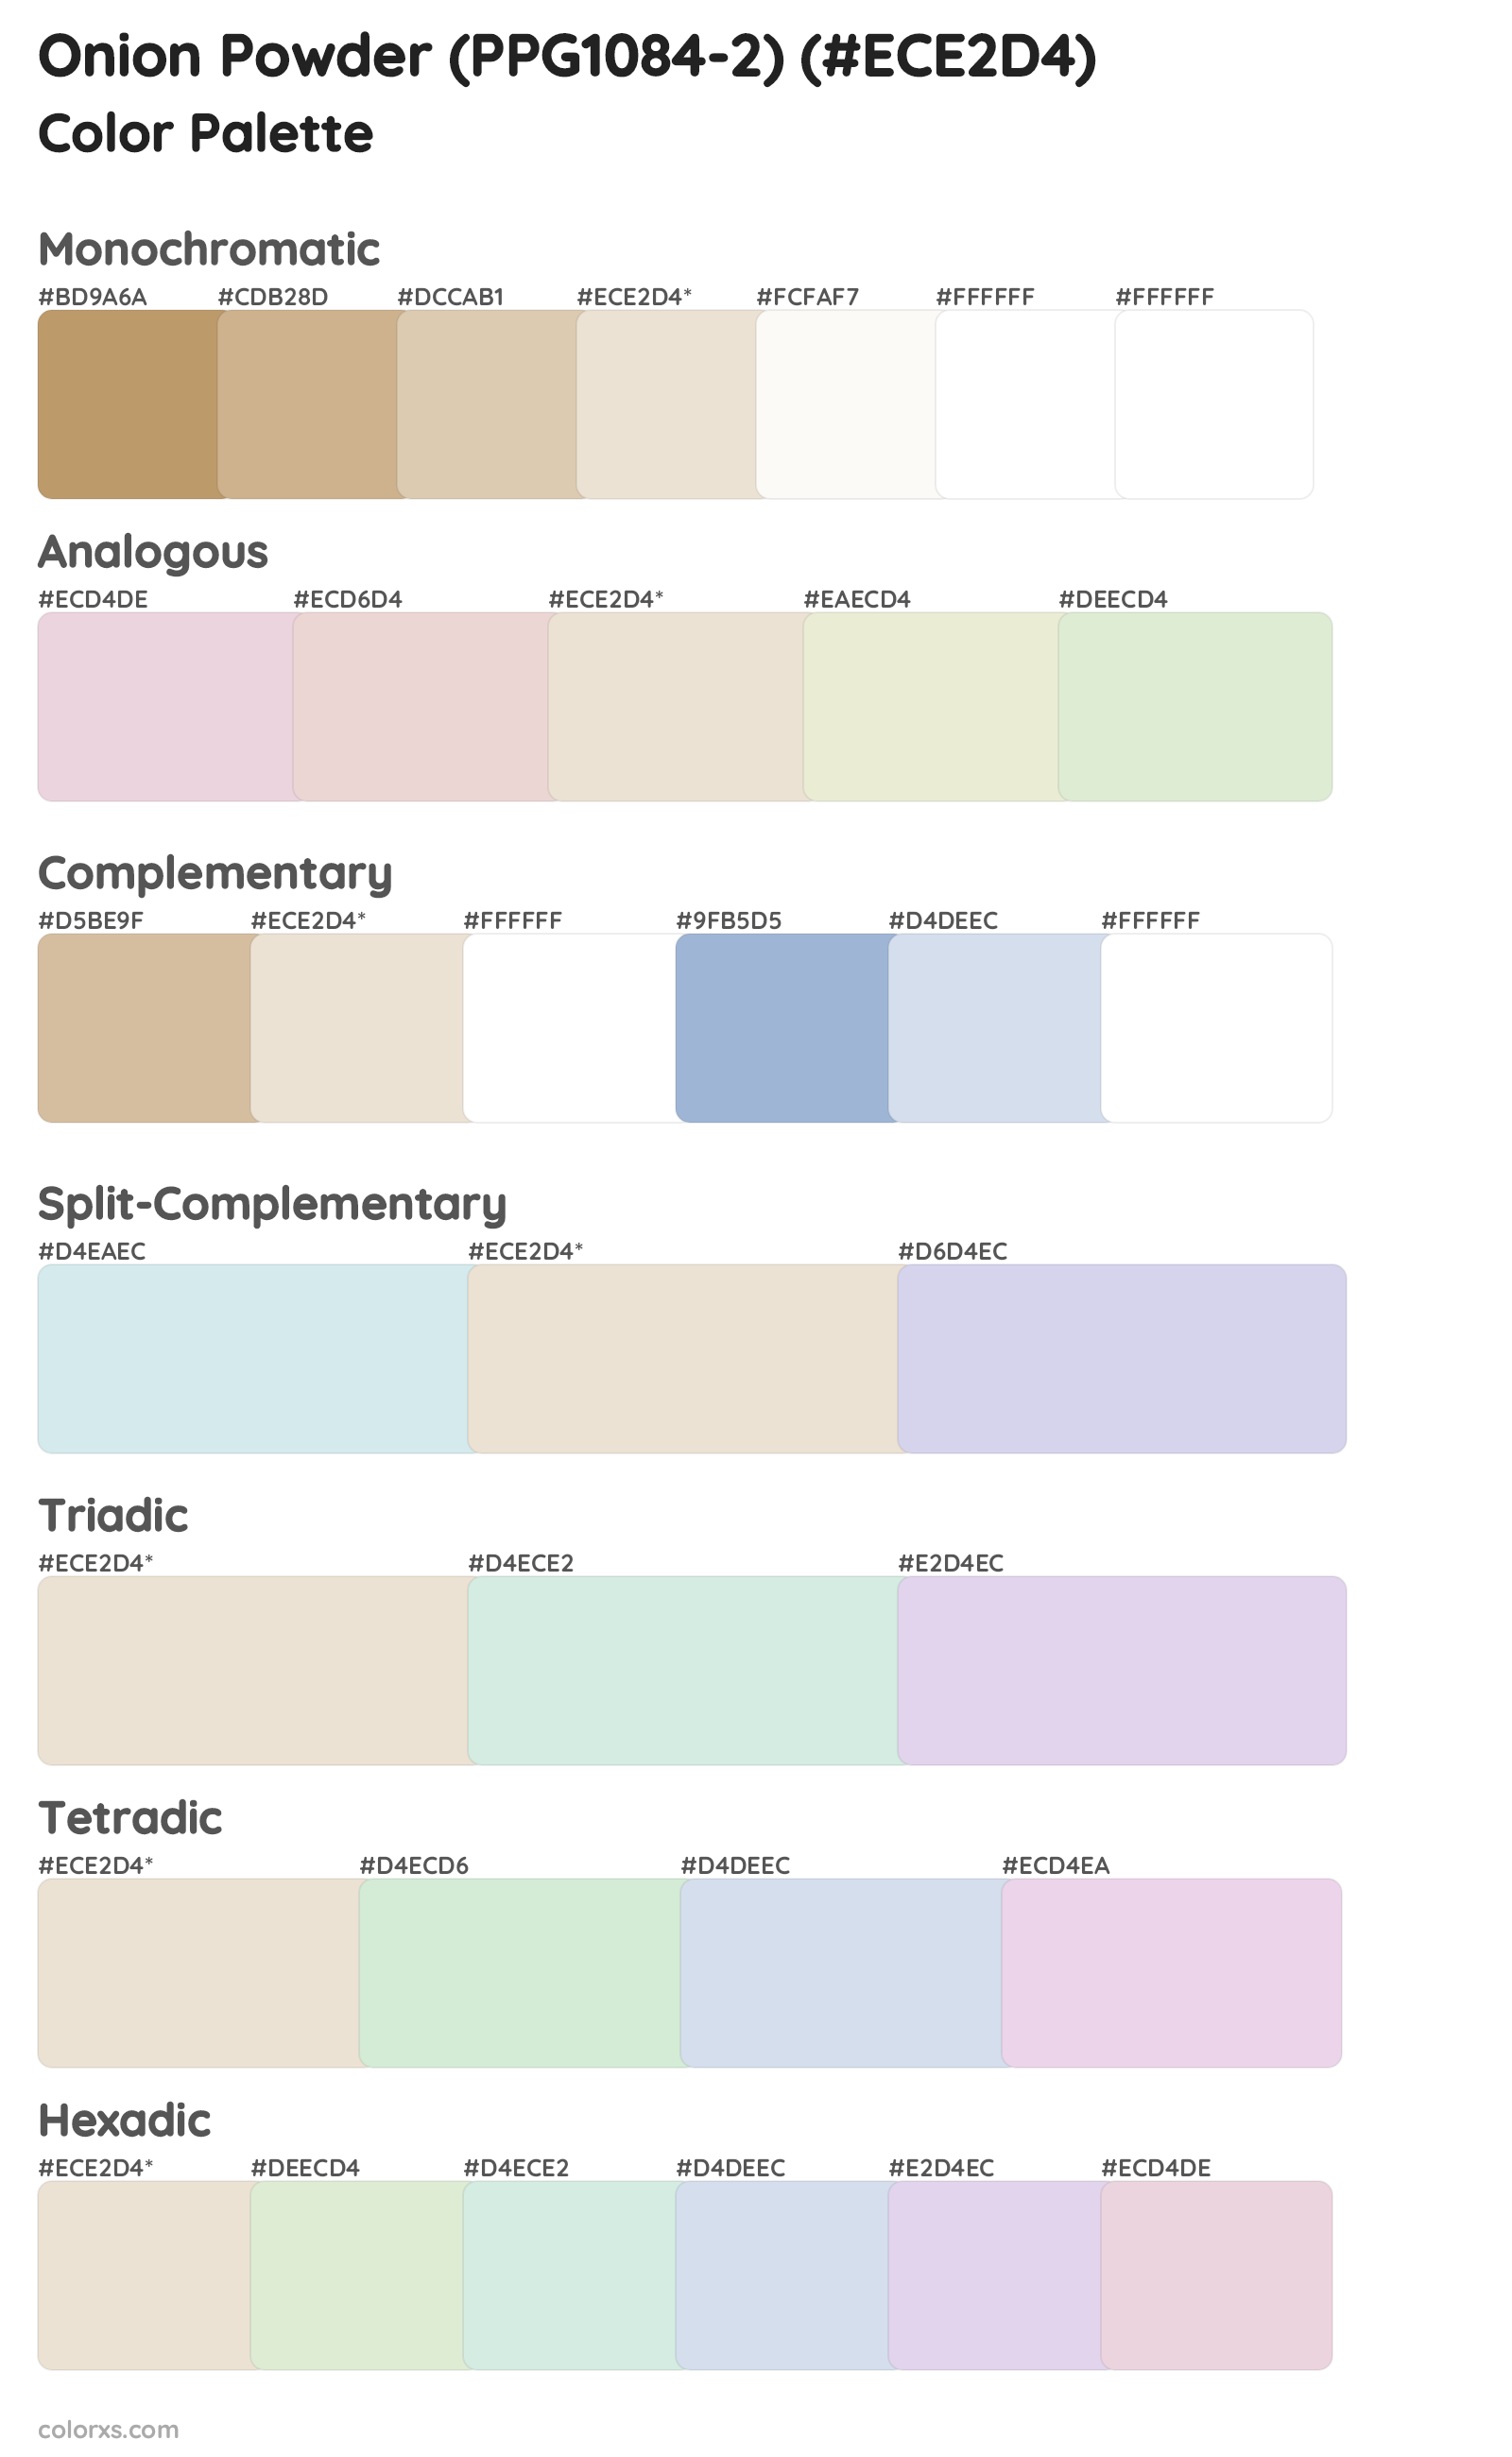 Onion Powder (PPG1084-2) Color Scheme Palettes